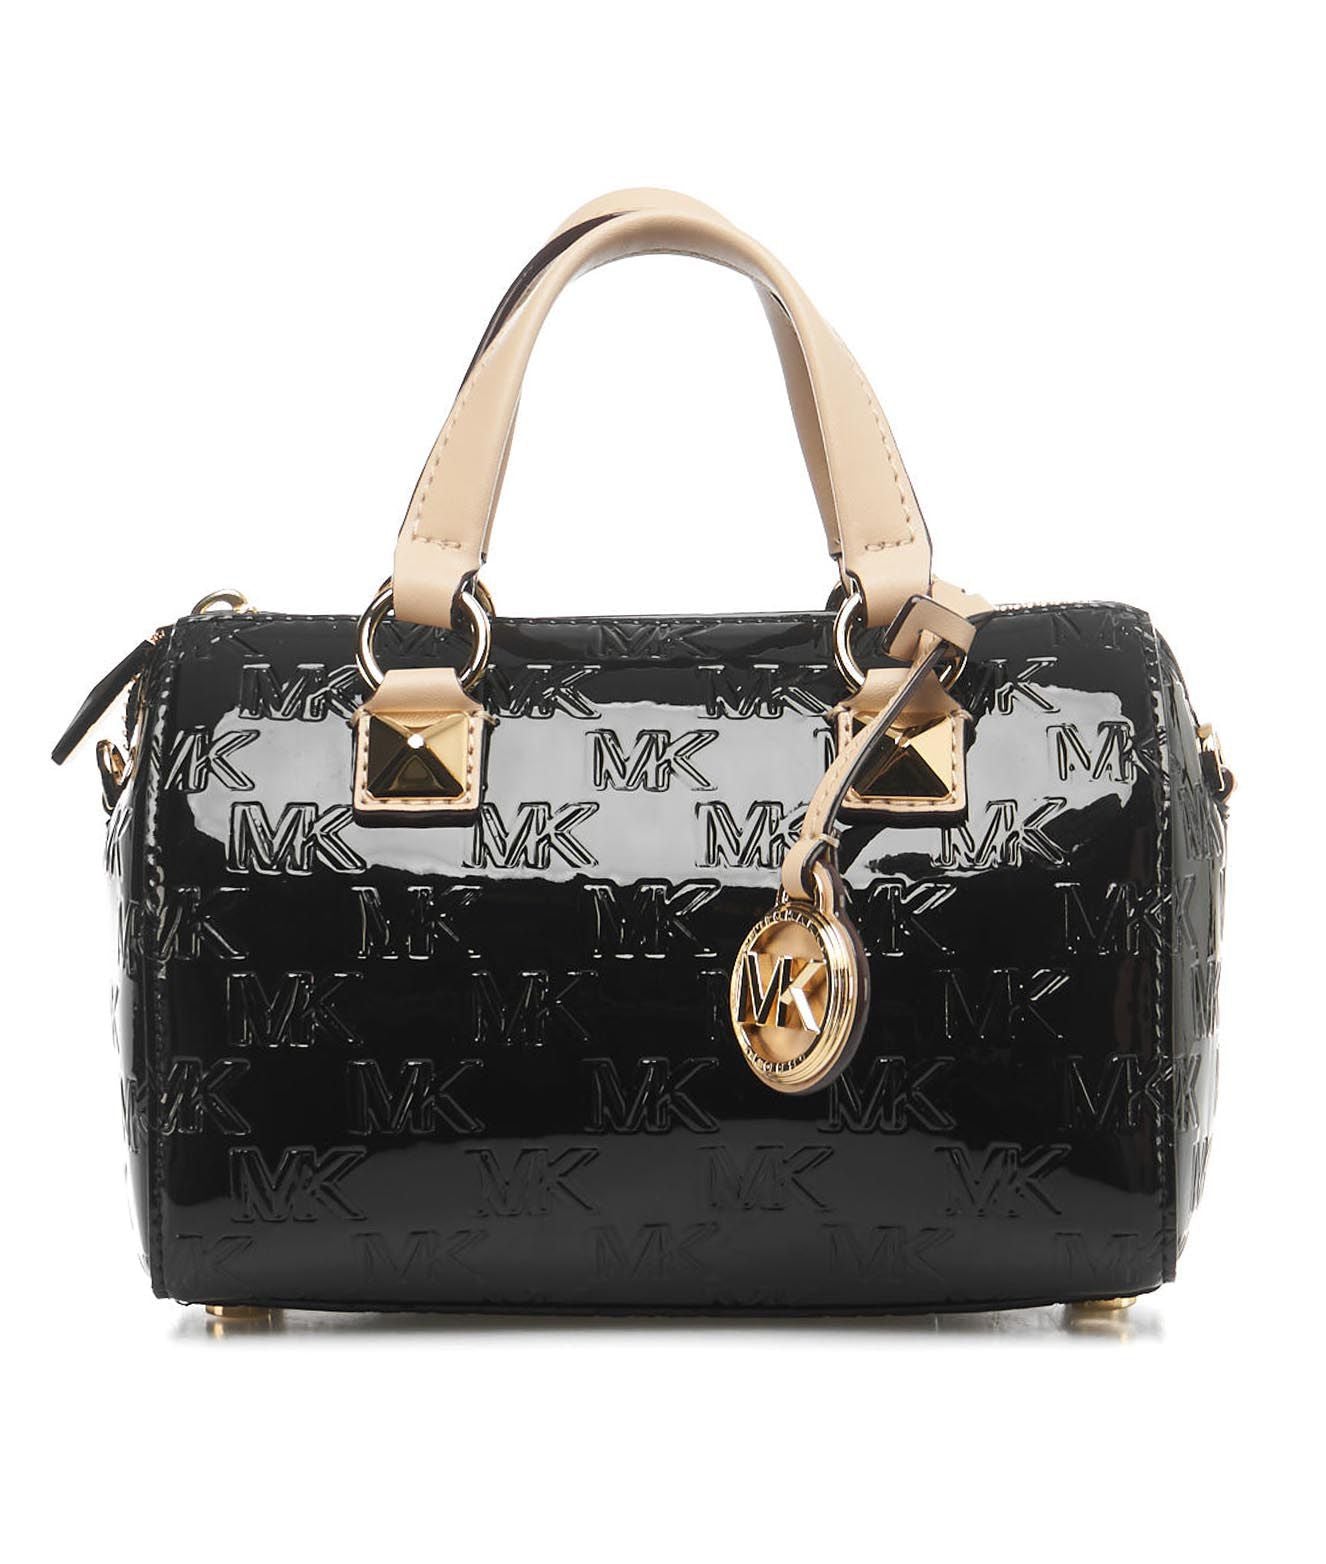 Buy Michael Kors @ Michael Kors Set Of 5 Leather Handbag/Slingbag/Shoulder  Bag/Wallet For Women,MKHB-002 at Amazon.in